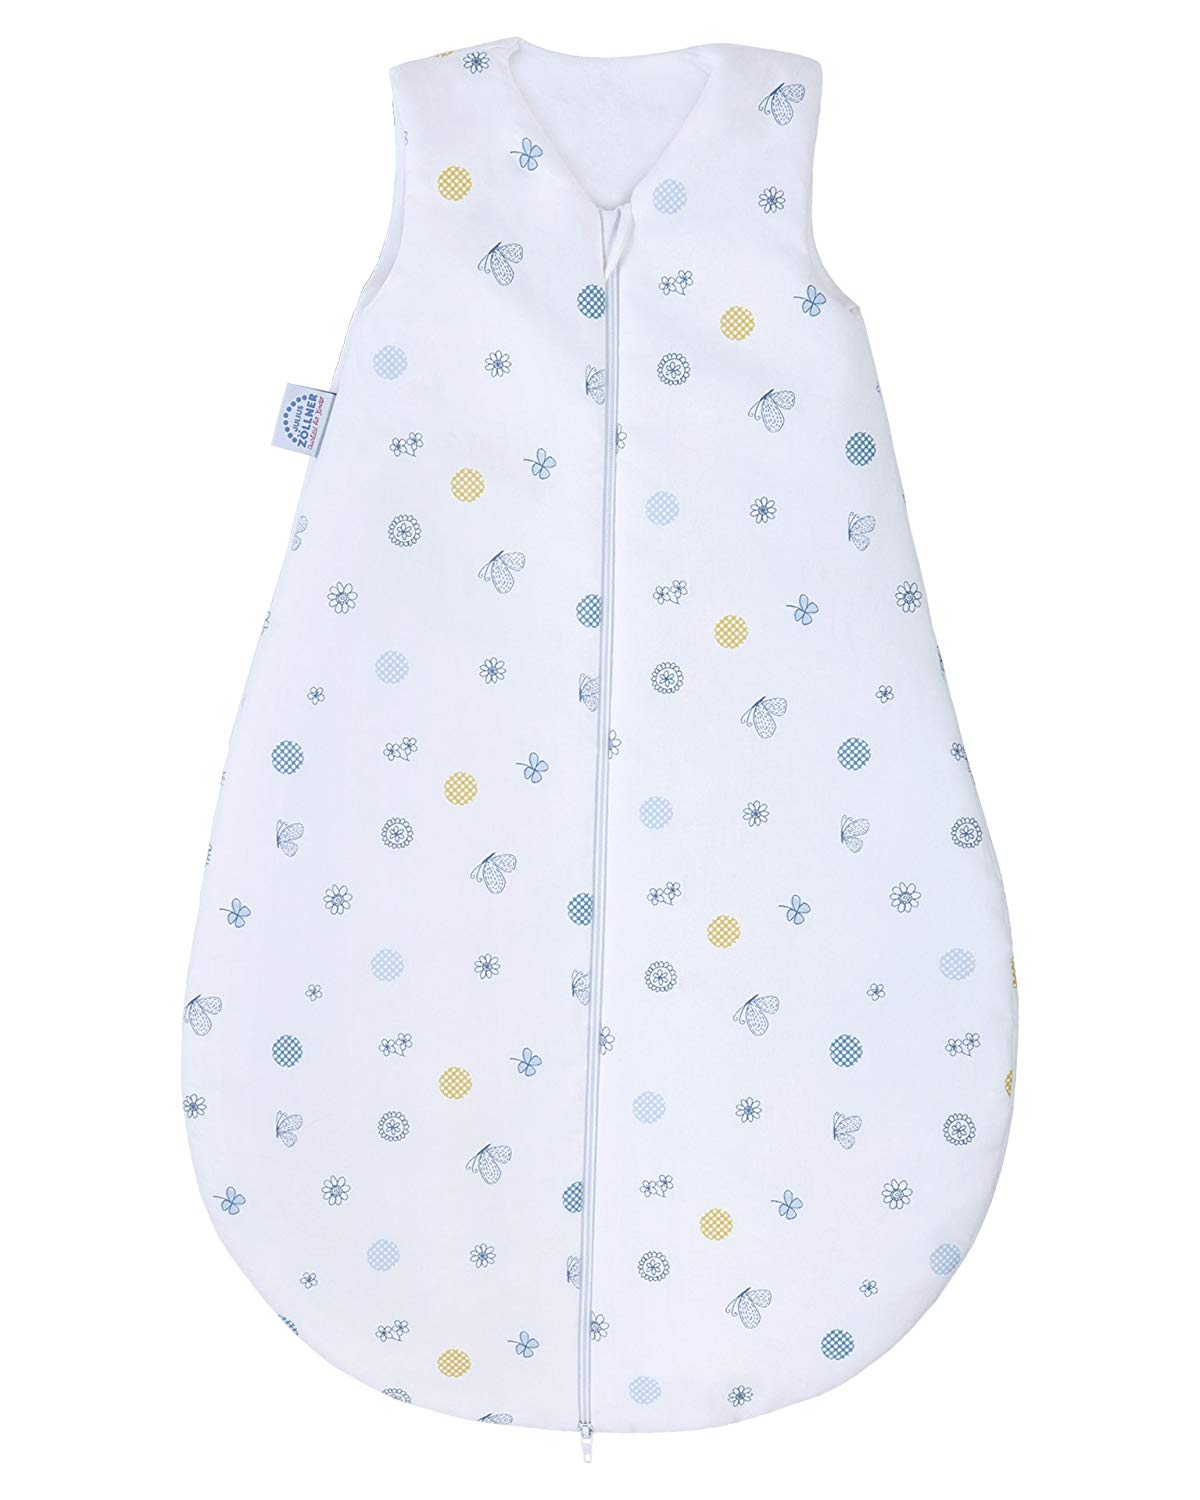 Julius Zöllner Baby’s Sleeping Bag, Summer or year-round Sleeping Bag, Standard 100 by Oeko-Tex, Made in Germany, in Various Designs and Sizes Summer sleeping bag